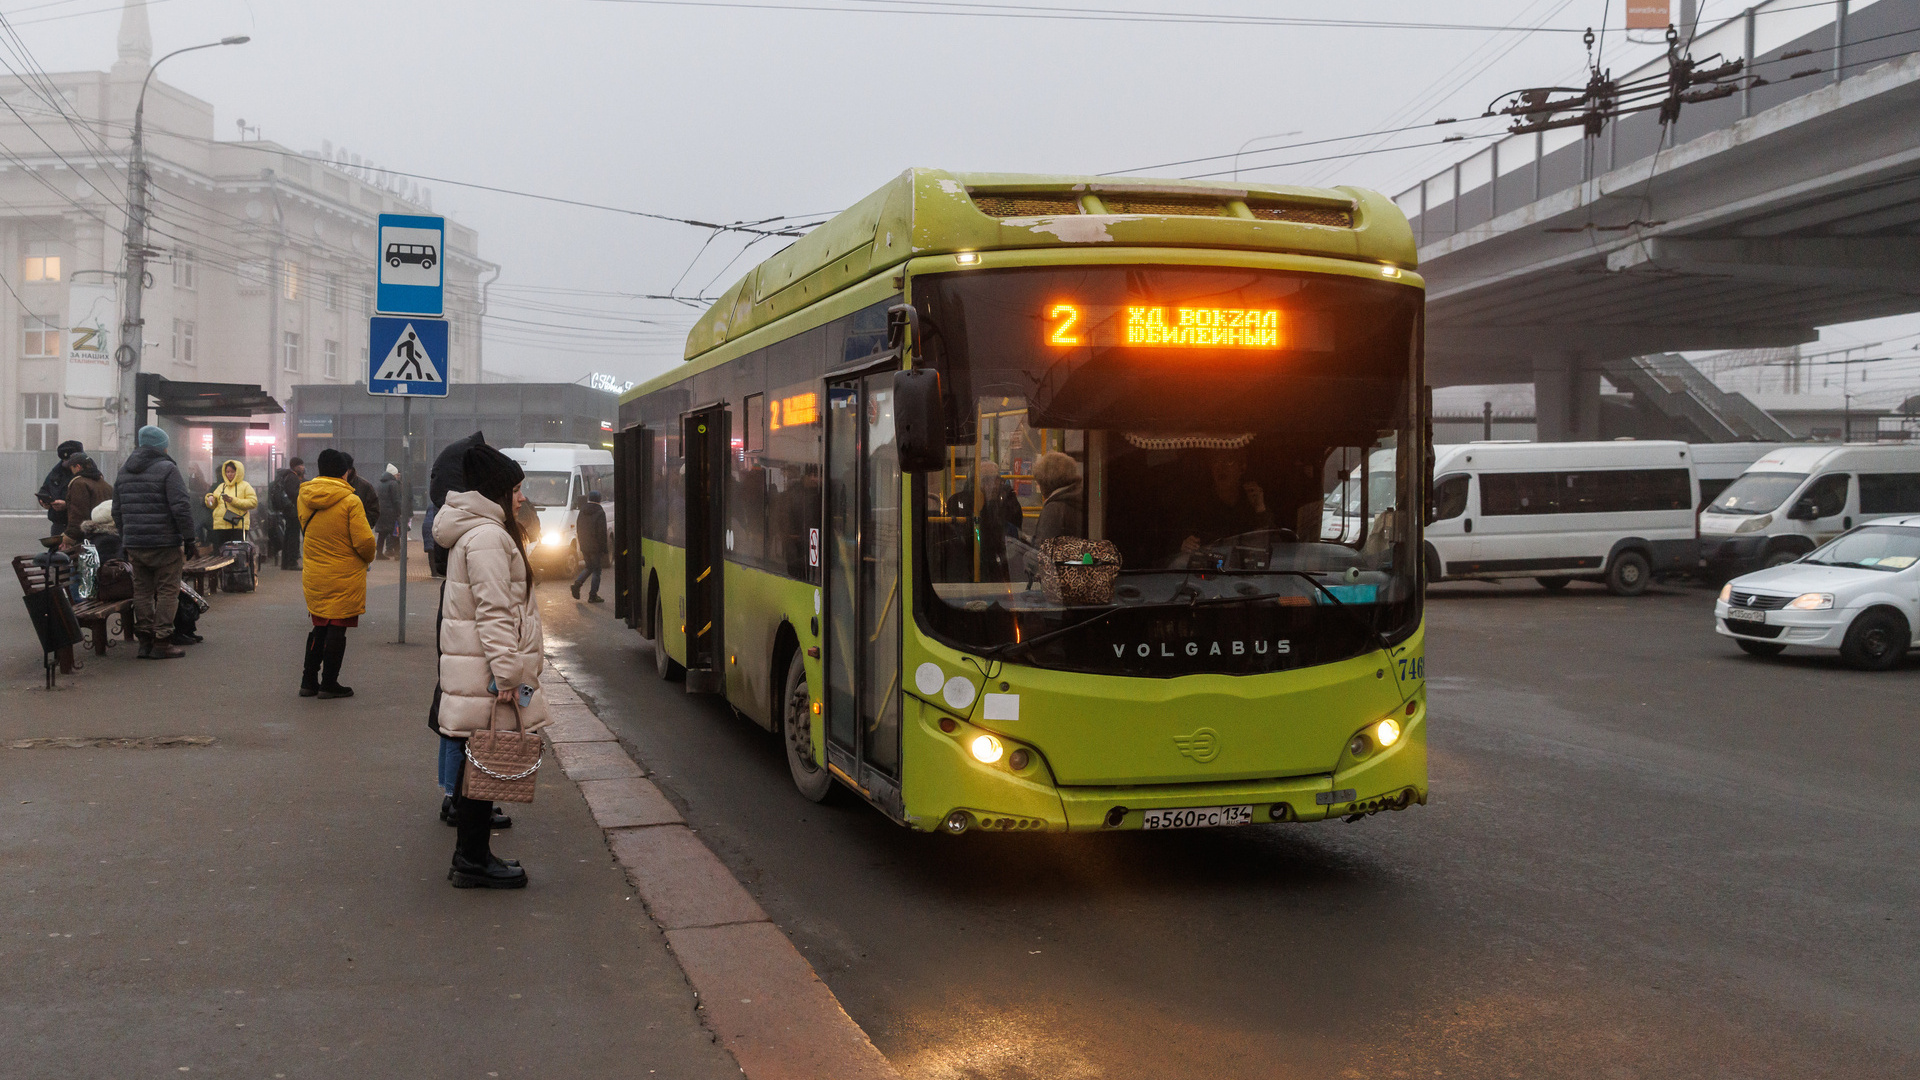 «Стали доводить кондуктора»: в Волгограде подросток залил водителя автобуса перцовкой после отказа оплатить проезд